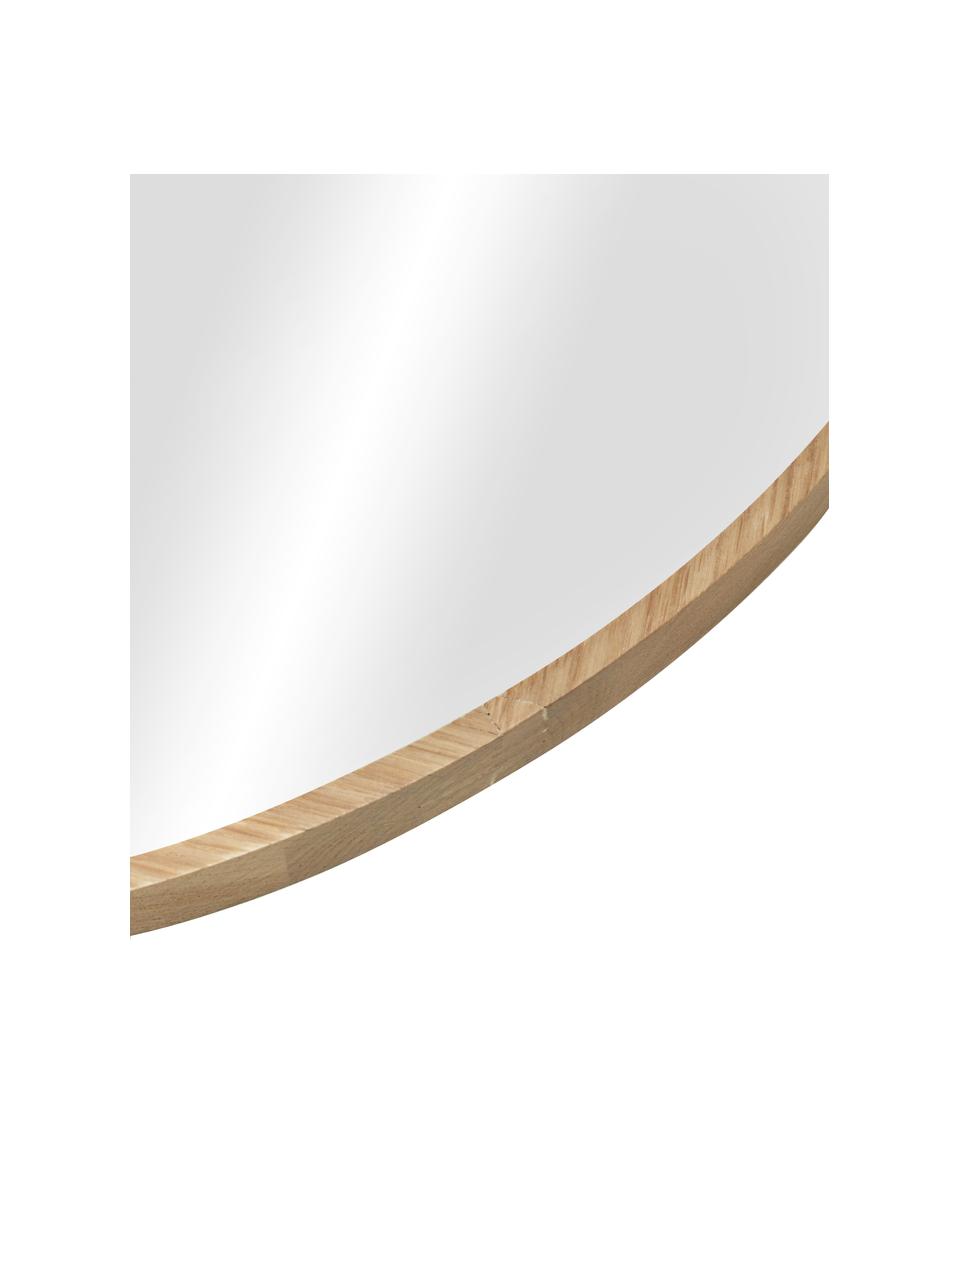 Runder Wandspiegel Avery mit braunem Holzrahmen, Rahmen: Eichenholz, Spiegelfläche: Spiegelglas, Braun, Ø 55 x T 2 cm